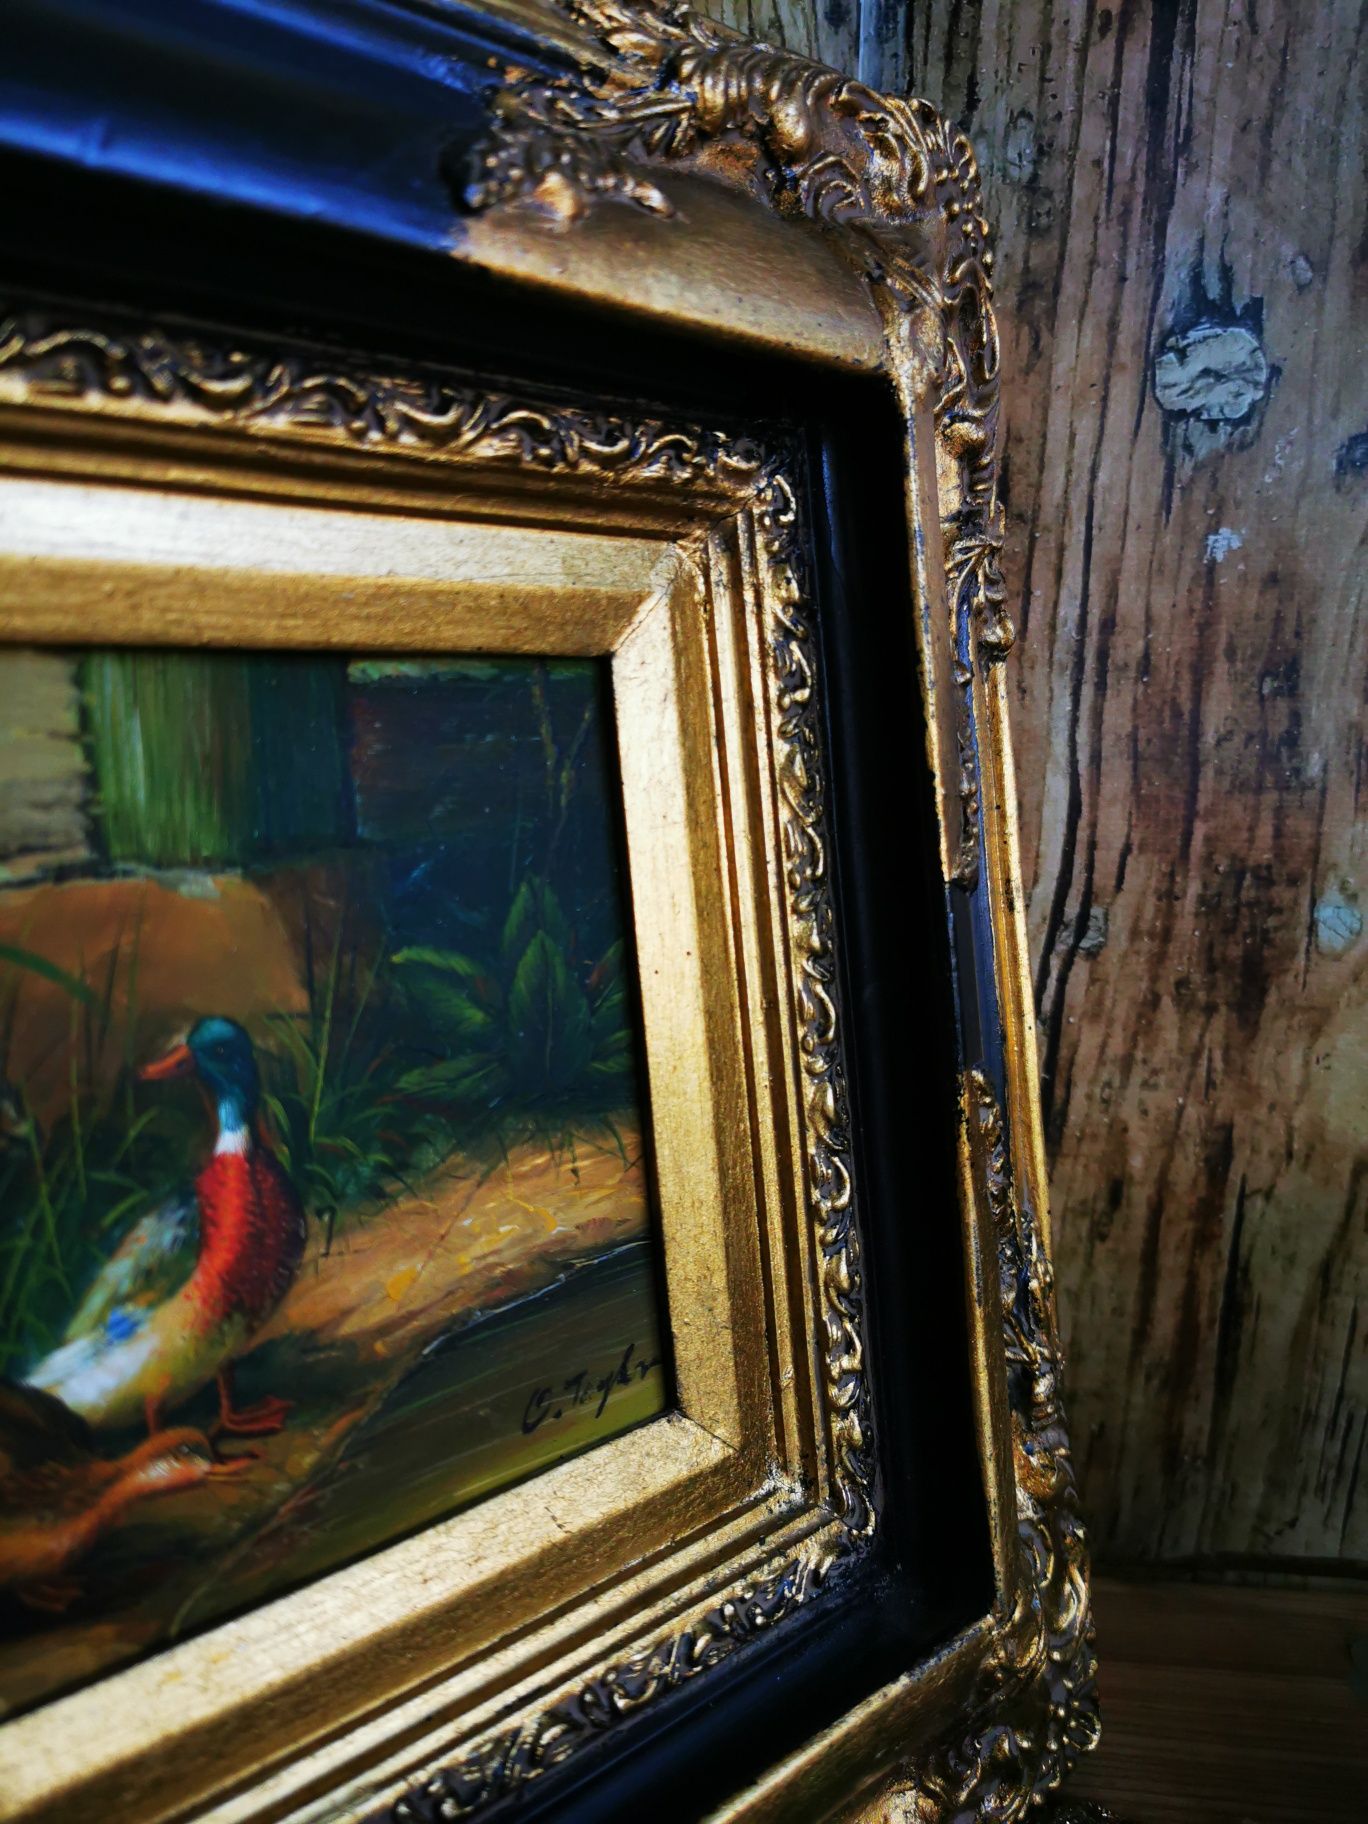 Obraz olejny, kaczki, drewniana, ozdobna rama UNIKAT